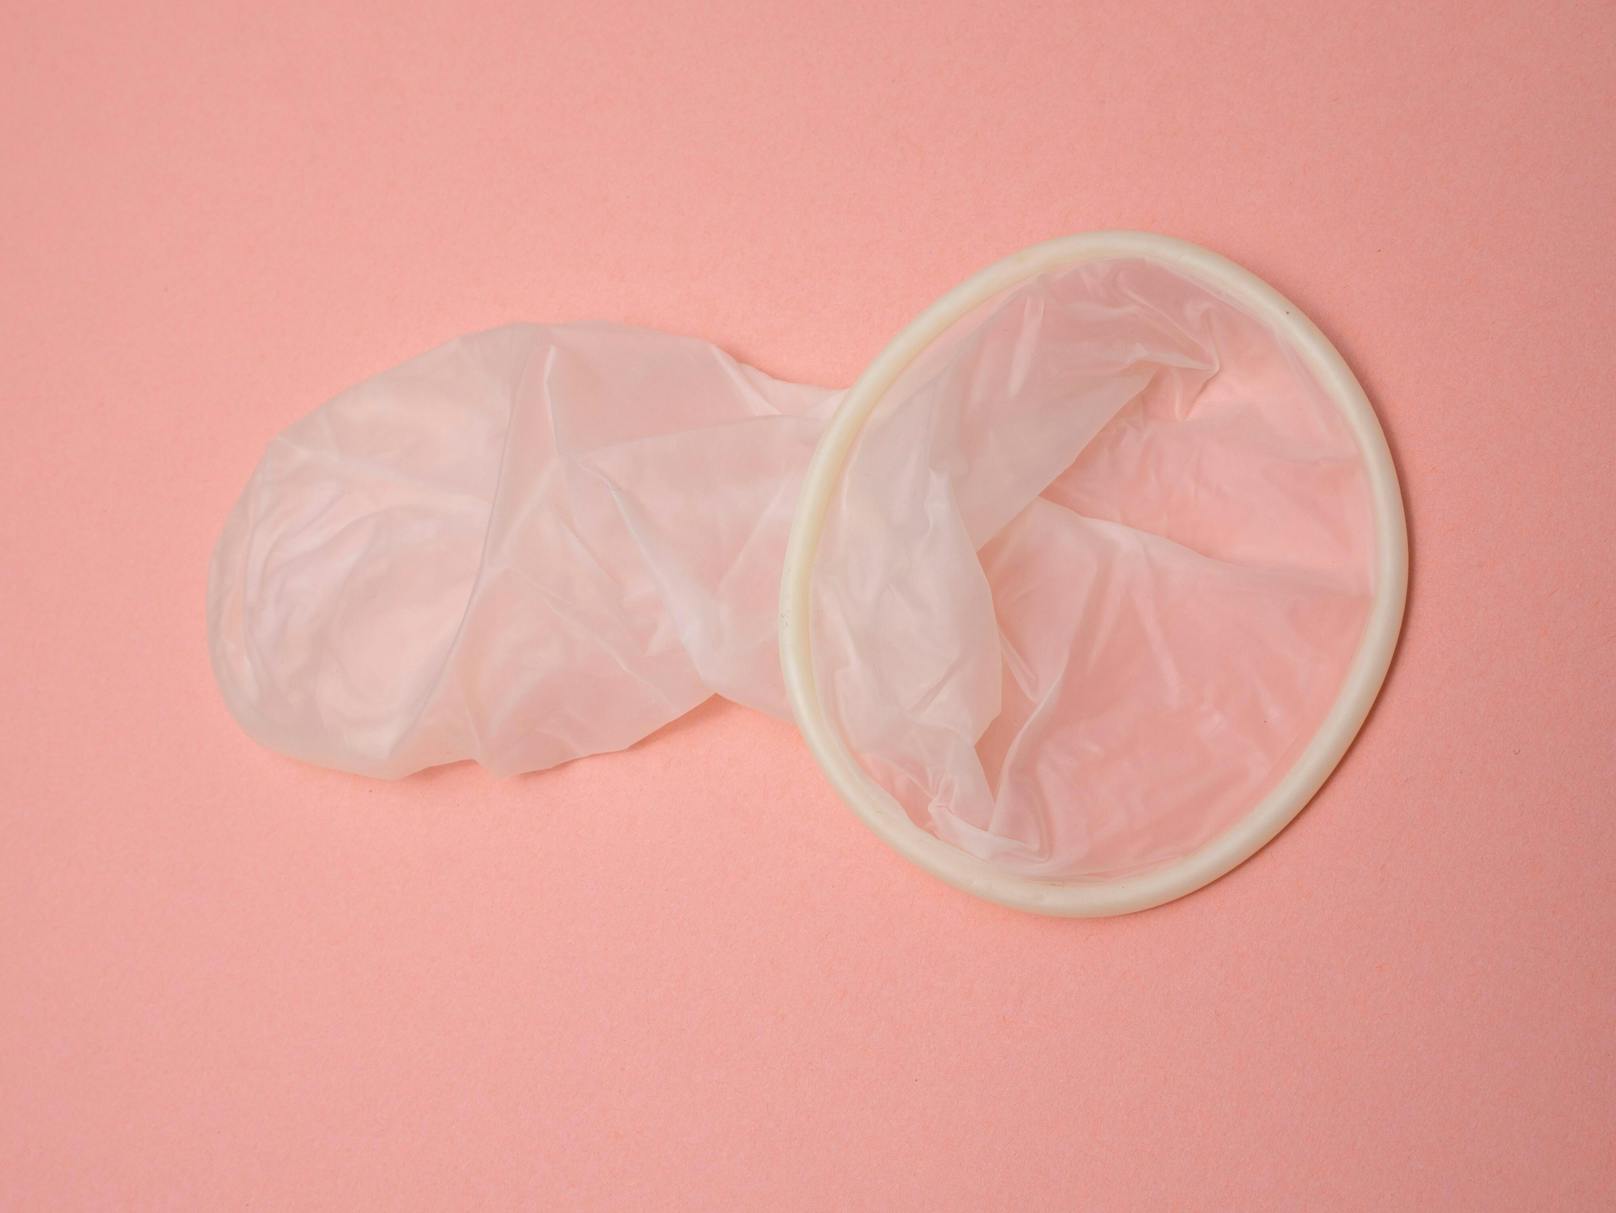 <strong>3. Condom-Challenge!</strong>&nbsp;«Achtung, Erstickungsgefahr!», schrieben Medien 2015 über die Condom-Challenge. Dabei wird ein Kondom mit Wasser gefüllt und auf den Kopf einer Person fallen gelassen. Das Kondom wird durch den hohen Druck wie eine zweite Haut aufs Gesicht gepresst. In der Folge verschliessen sich die Atemwege.